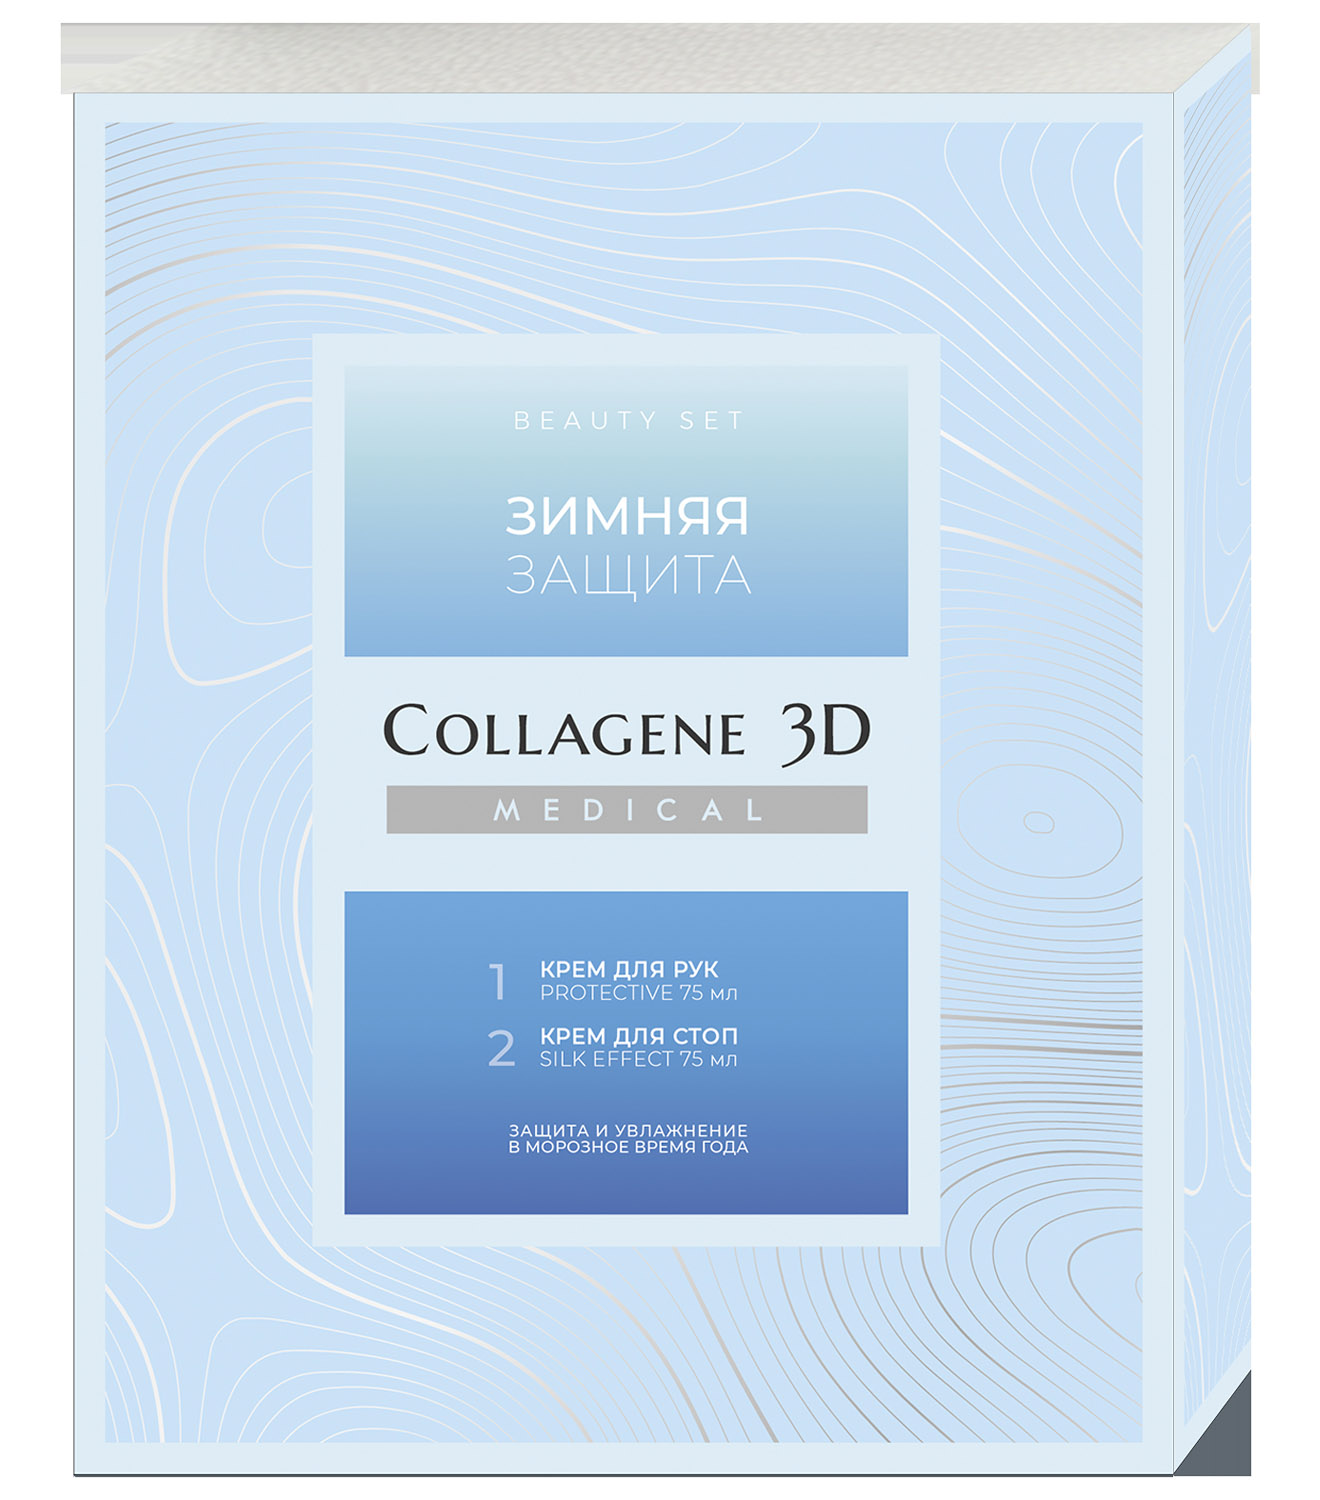 Medical Collagene 3D Подарочный набор Зимняя защита: крем 